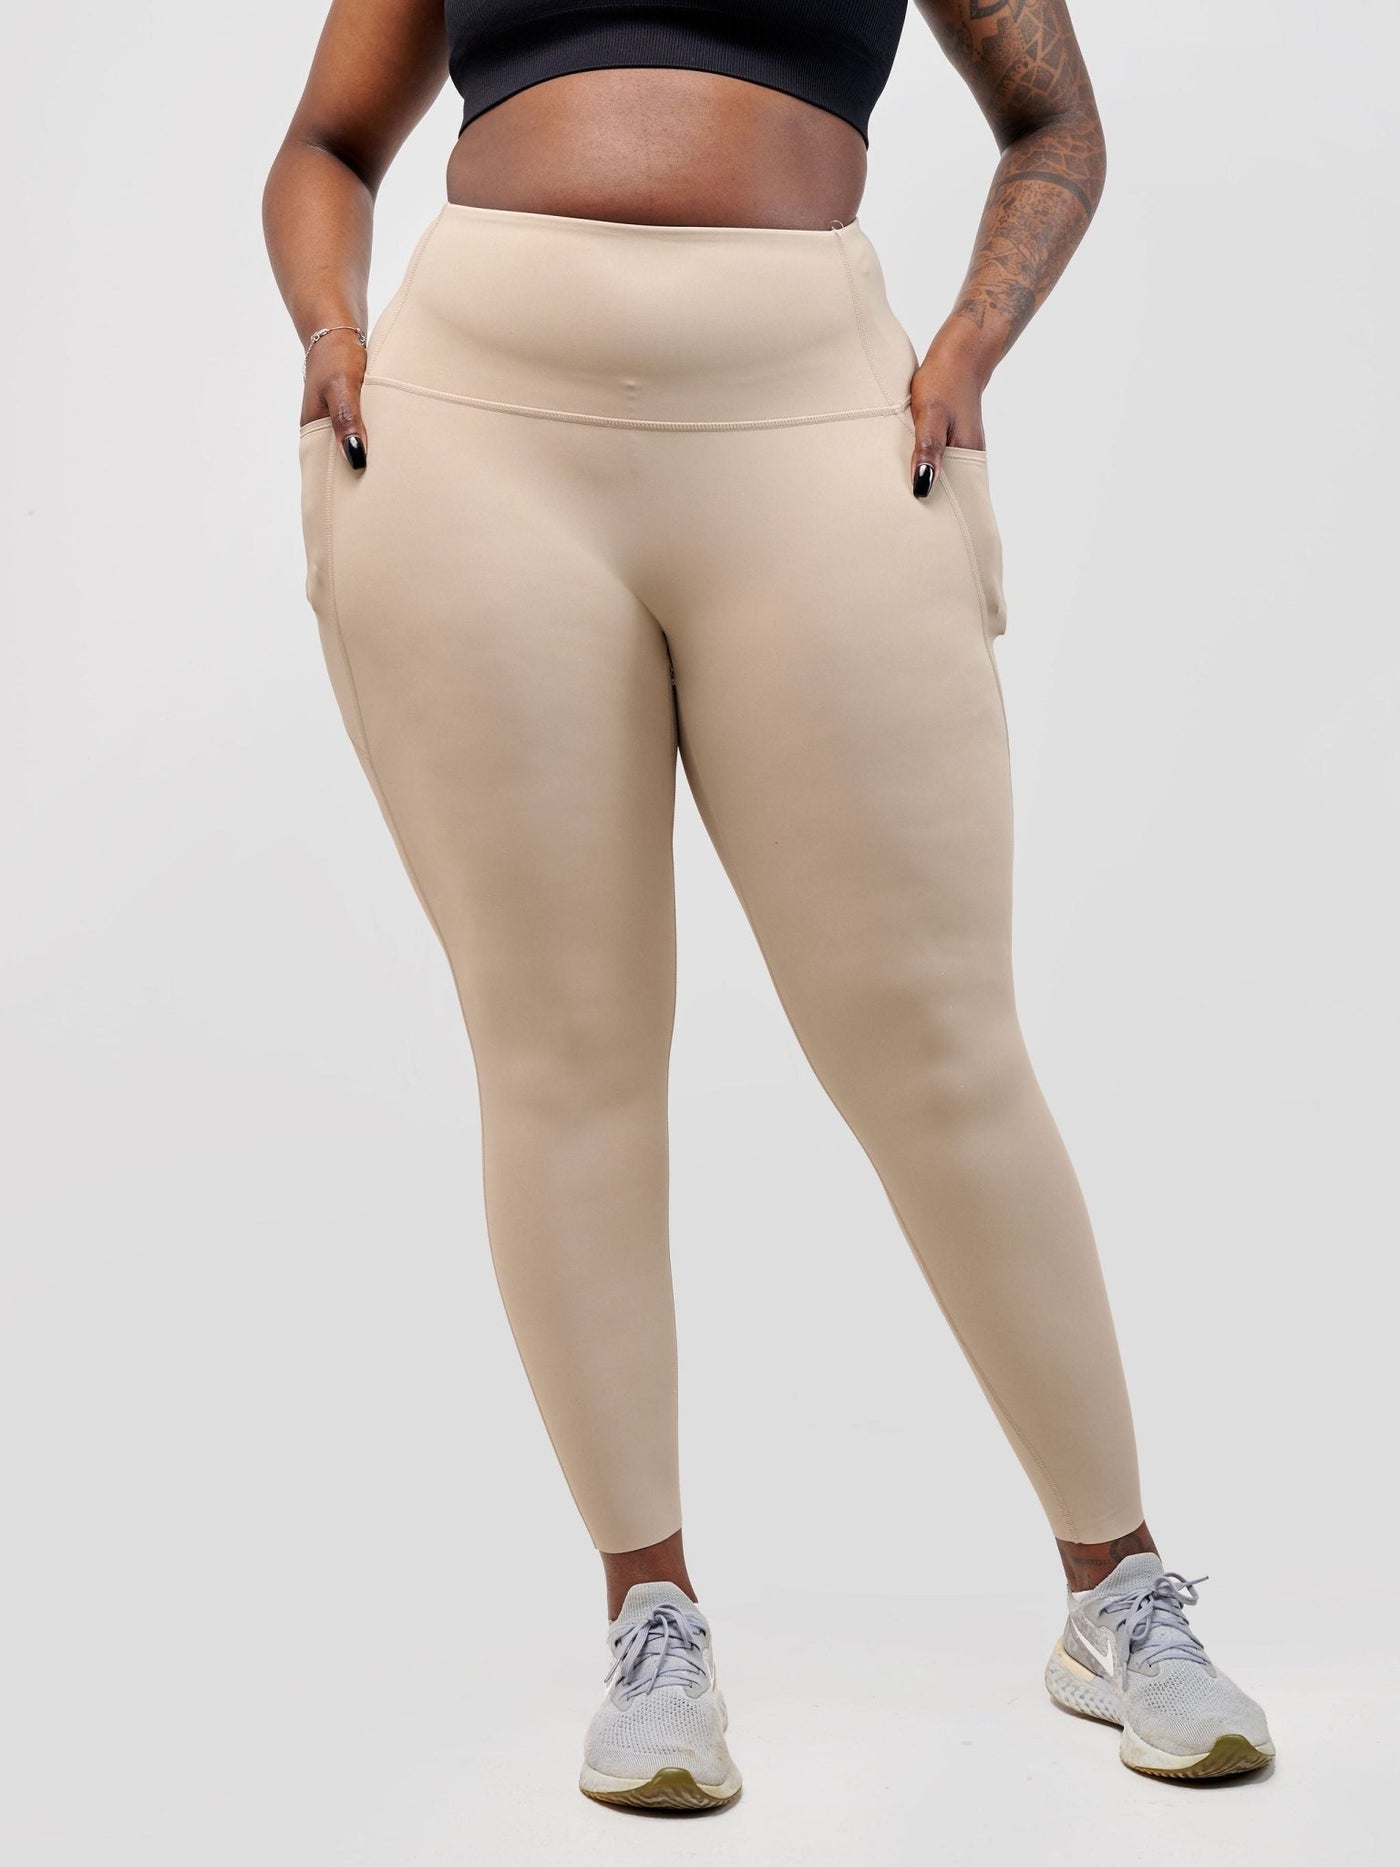 Ava Fitness Basic Double Pocket Leggings - Brown - Shopzetu